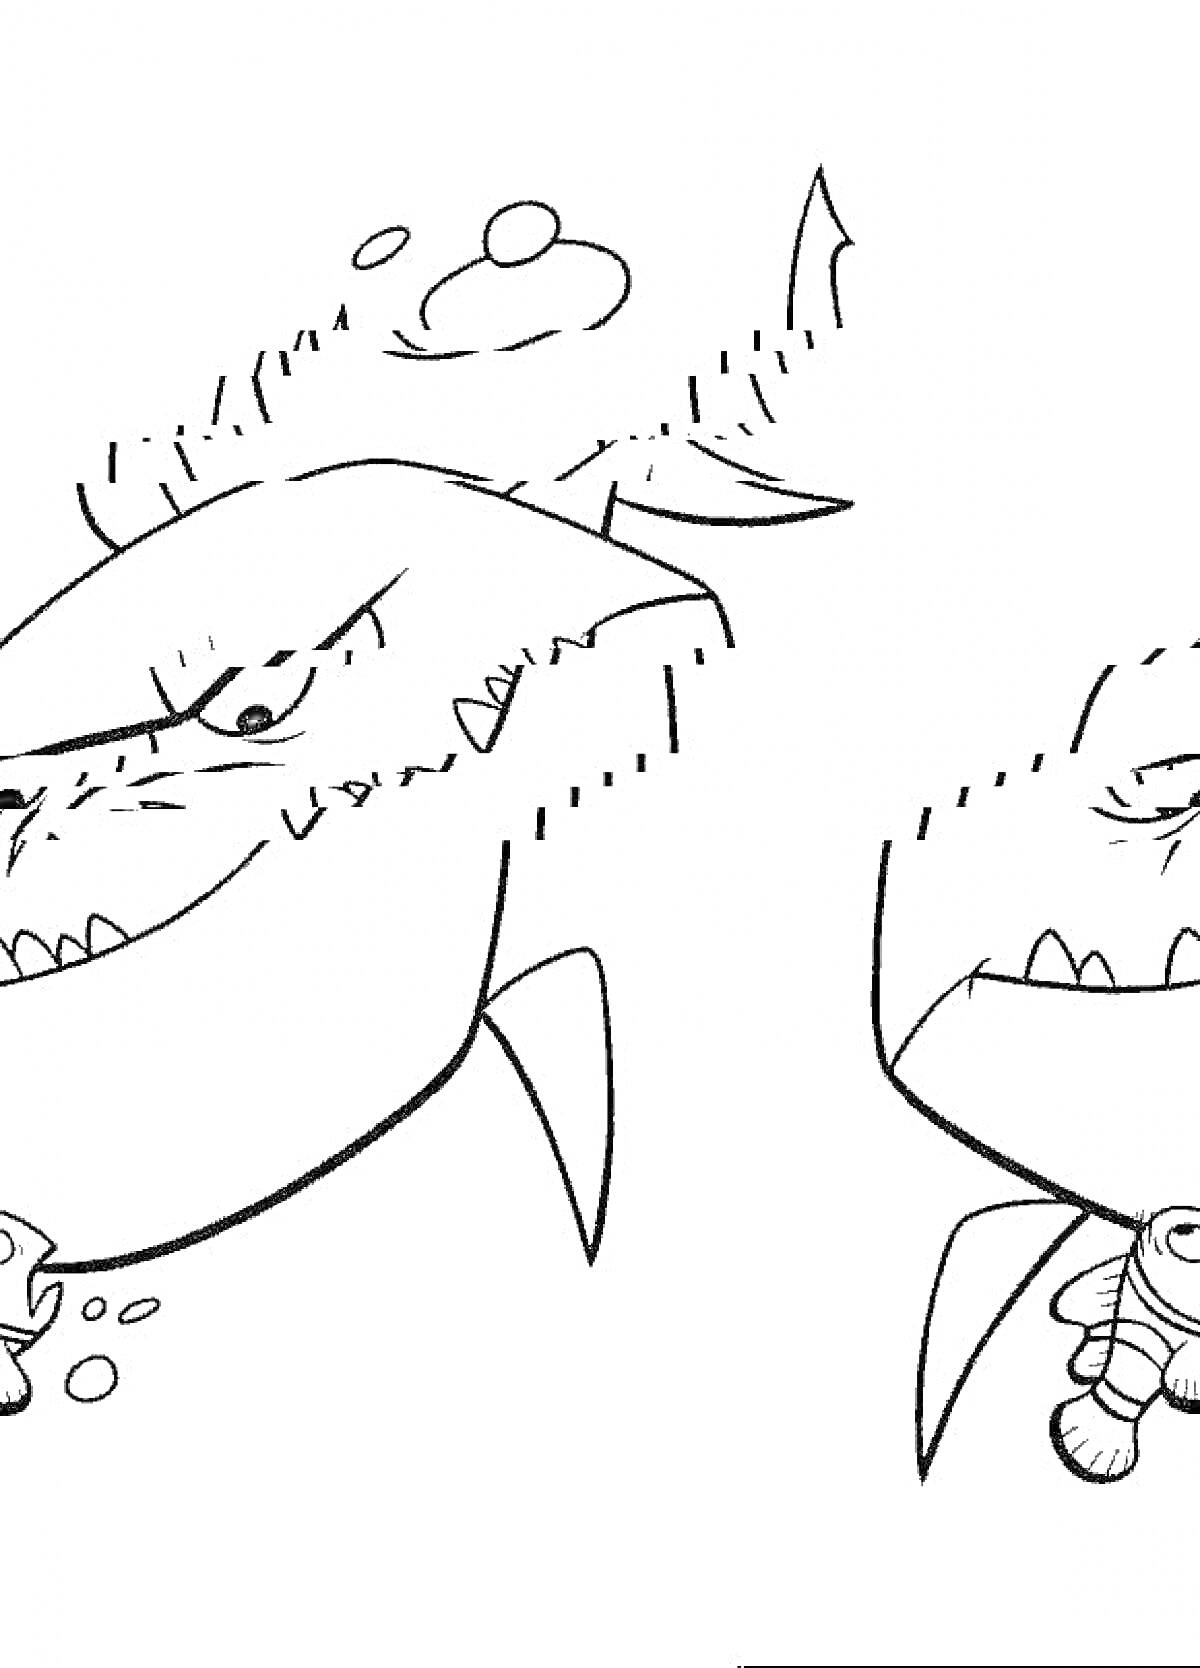 Две улыбающиеся акулы с добычей